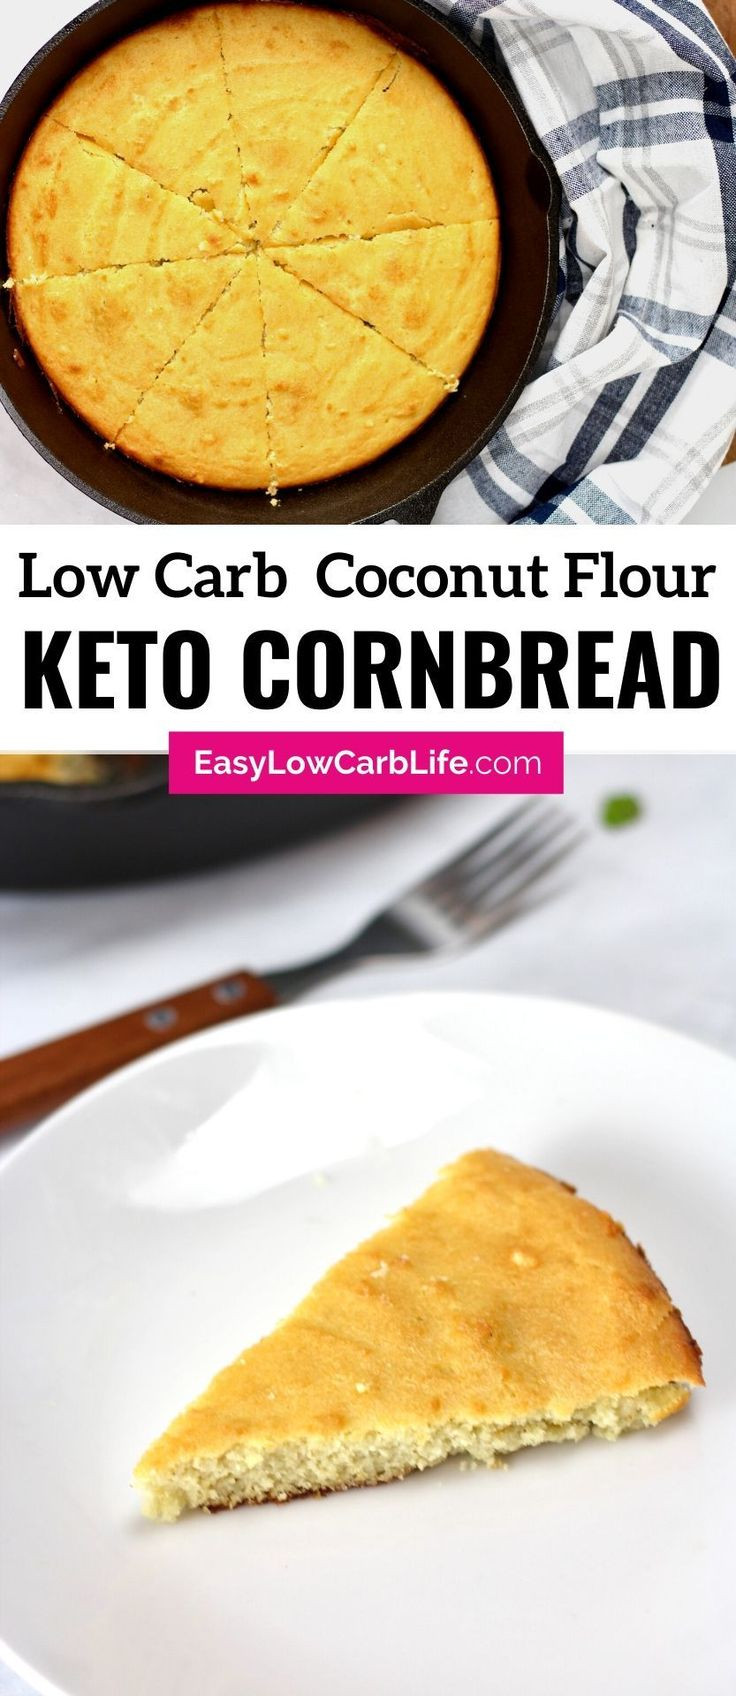 Keto Cornbread Recipe Easy
 Keto Low Carb Cornbread Recipe in 2020